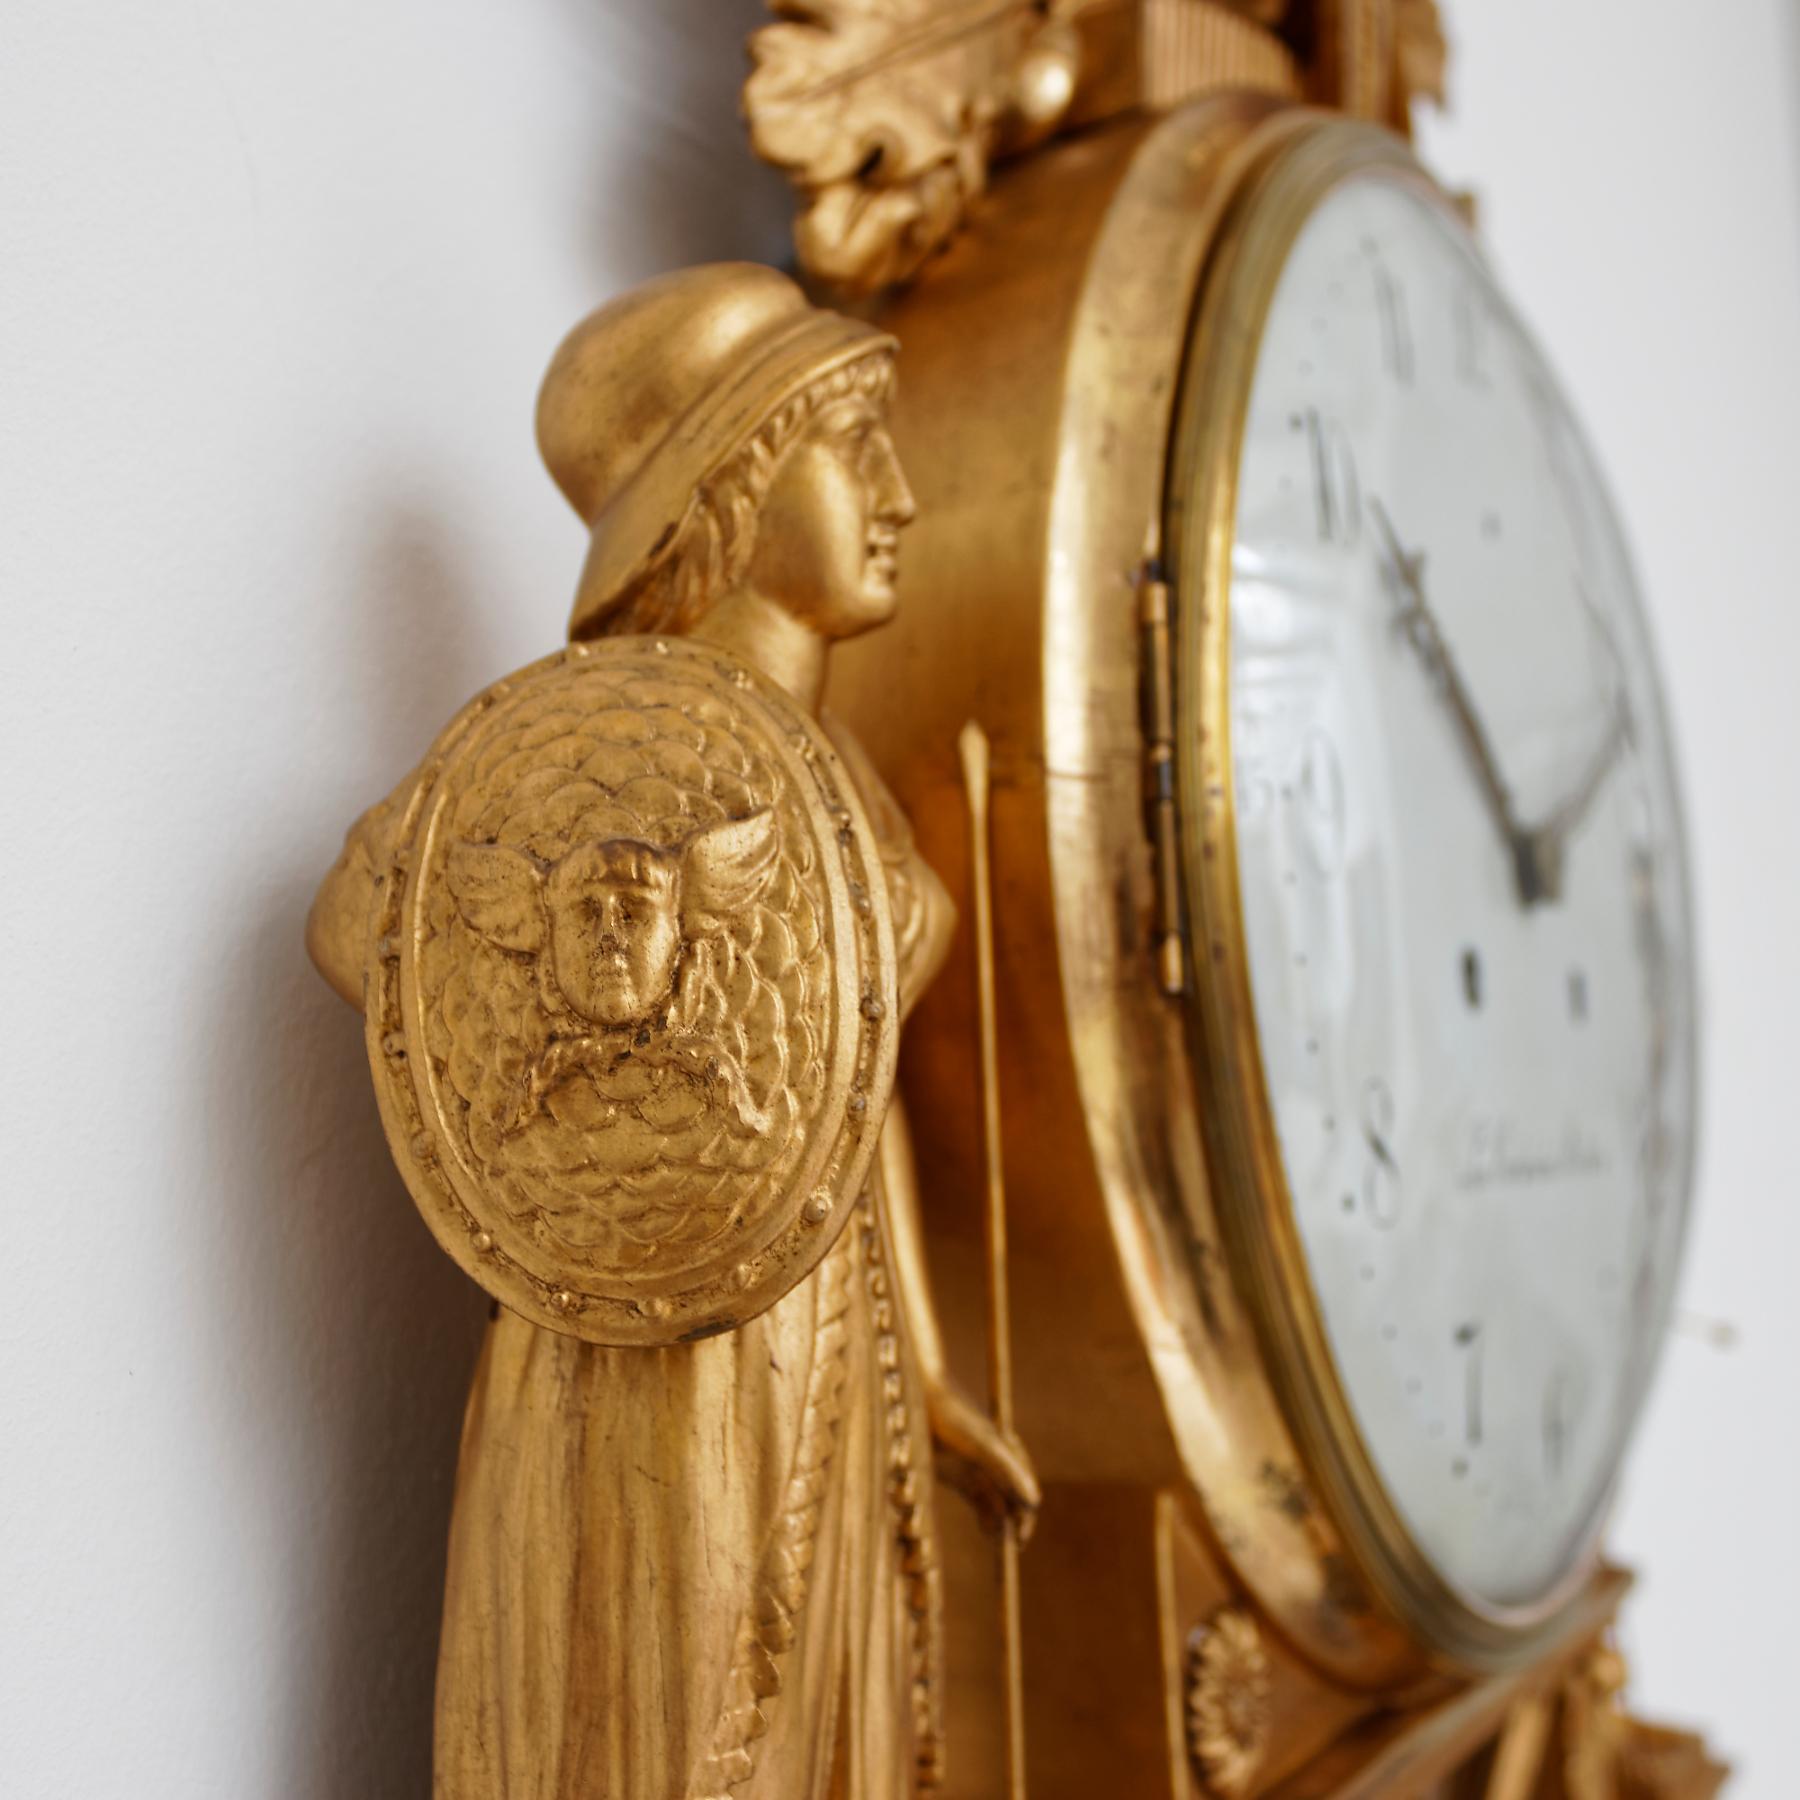 Une horloge murale inhabituelle en bois doré de l'Empire suédois, datant du début du 19e siècle. Le cadran arabe peint en blanc est signé par l'horloger 